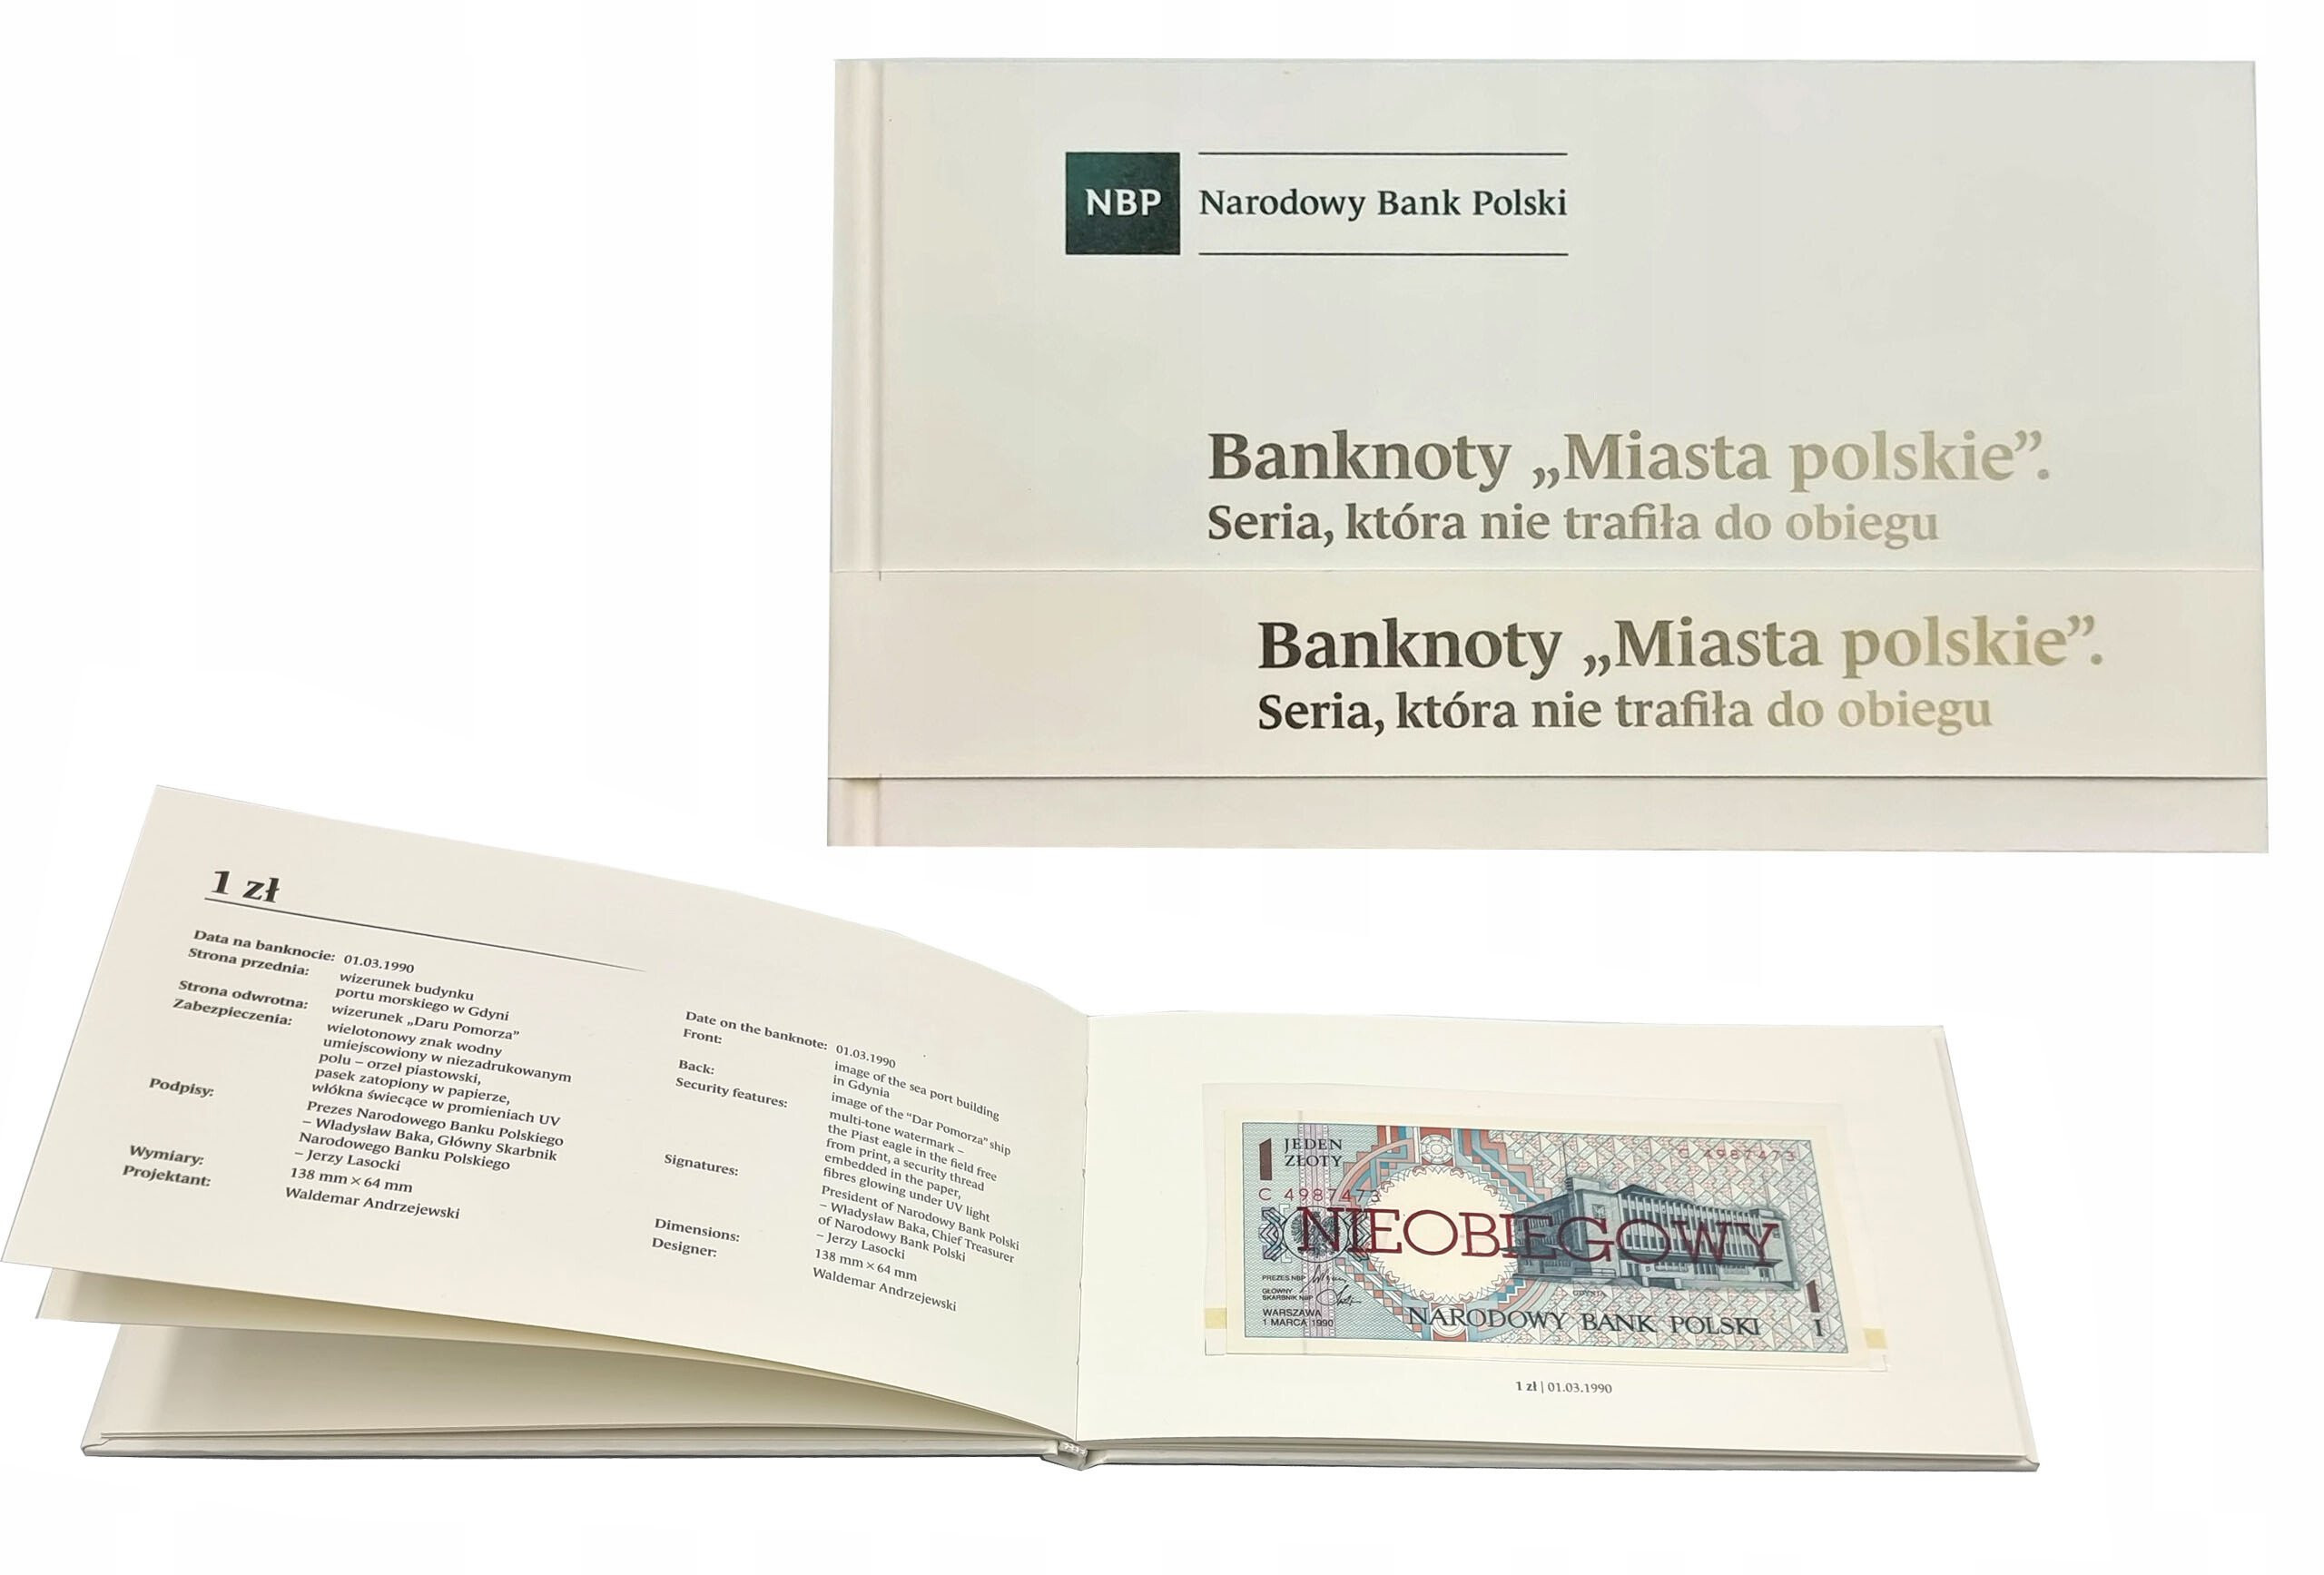 Miasta Polskie 1990 komplet banknotów 1-500 złotych – NIEOBIEGOWY